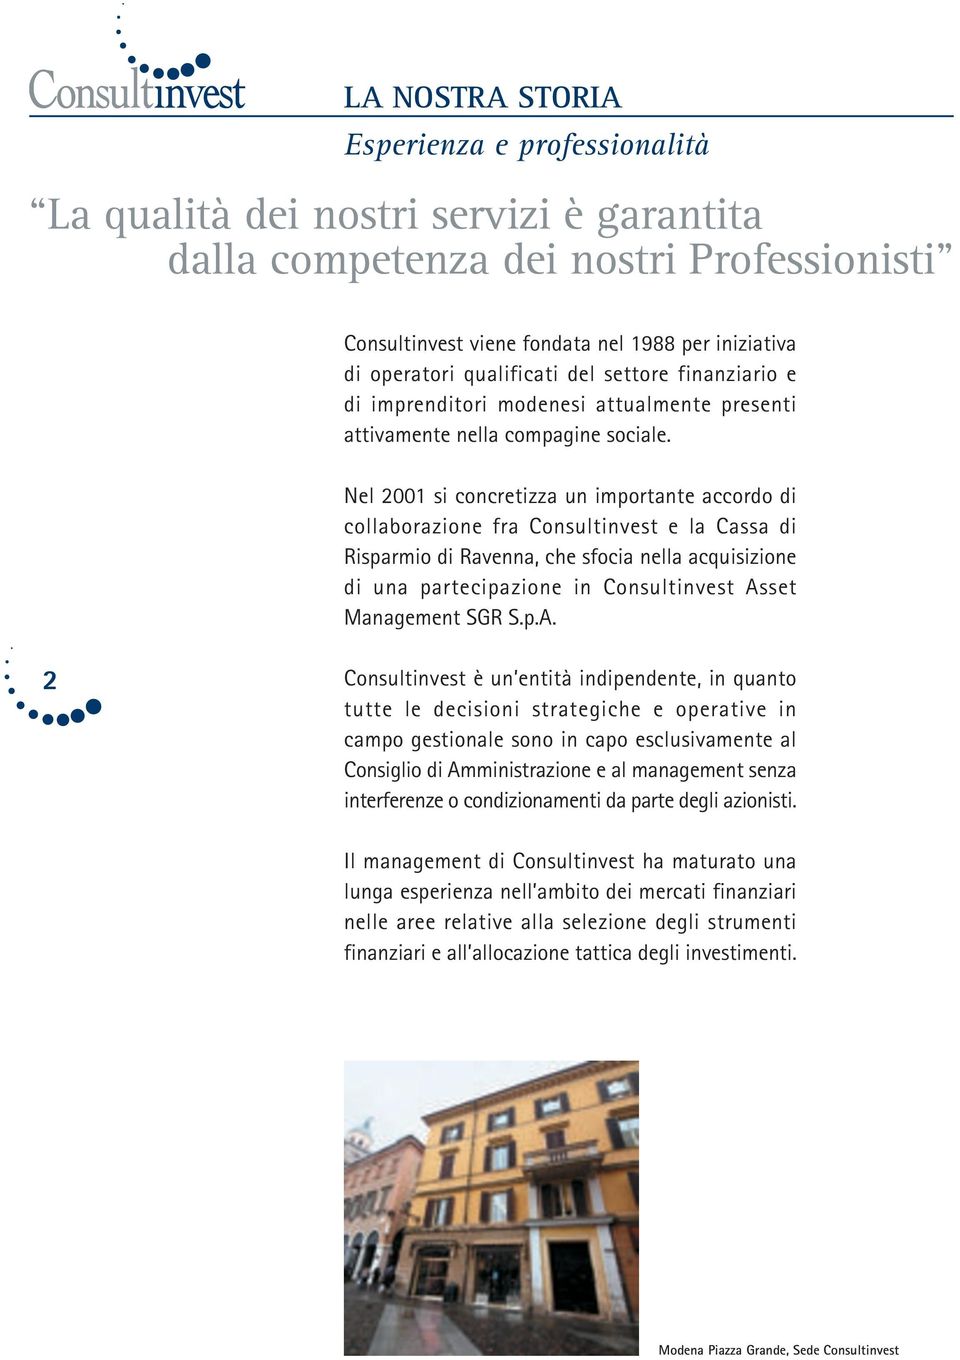 Nel 2001 si concretizza un importante accordo di collaborazione fra Consultinvest e la Cassa di Risparmio di Ravenna, che sfocia nella acquisizione di una partecipazione in Consultinvest Asset